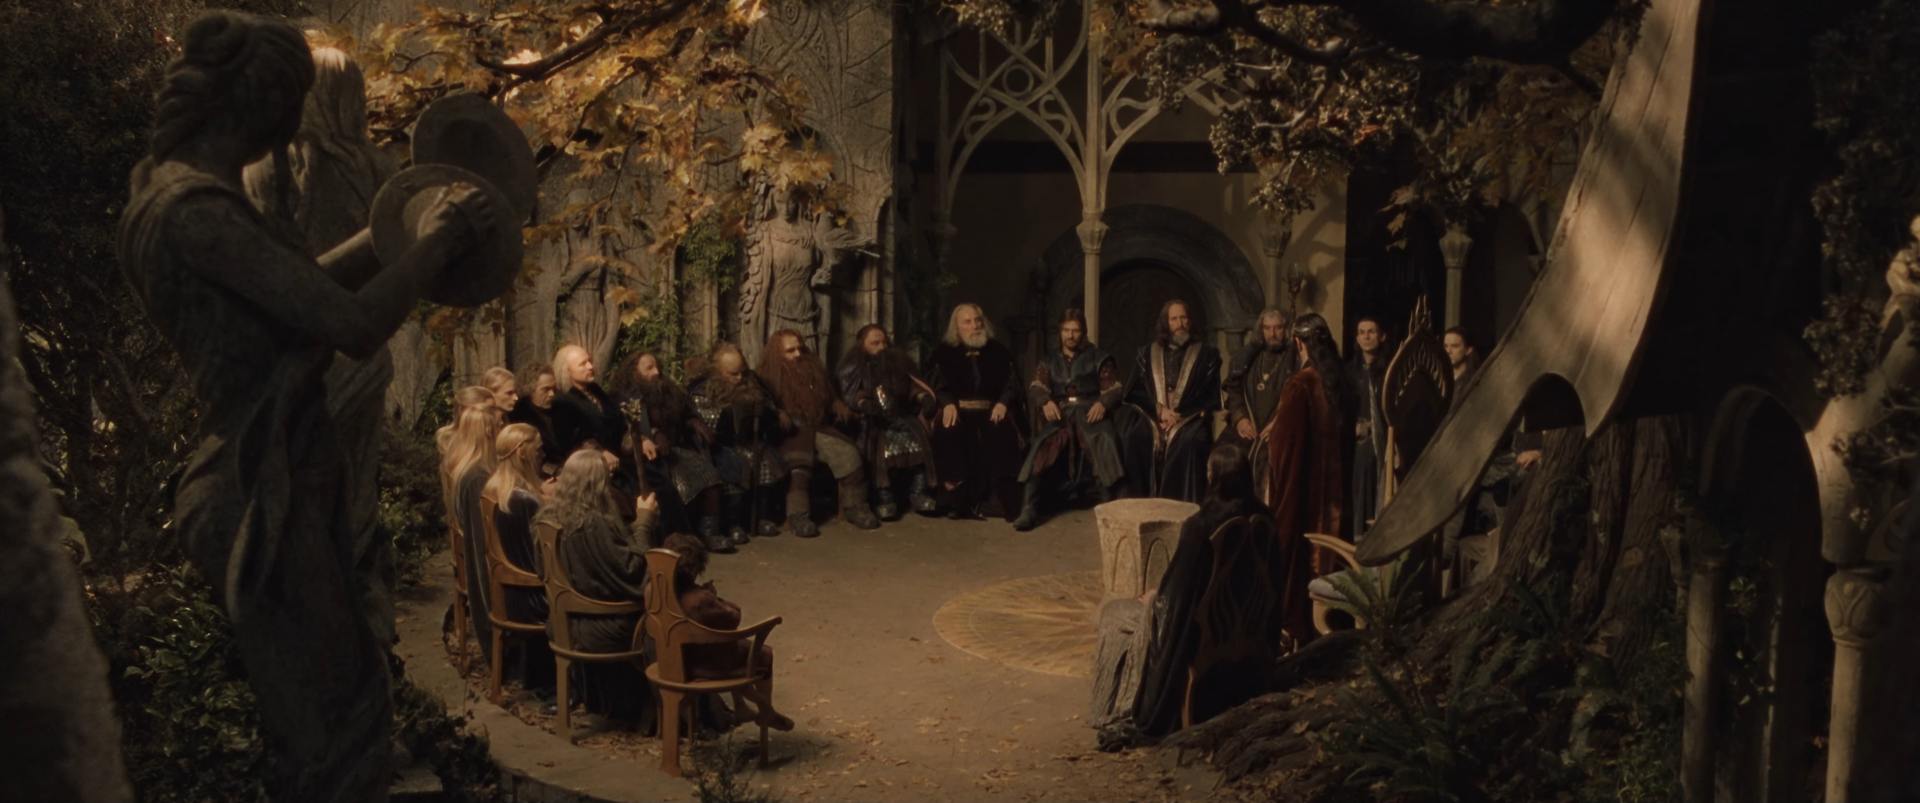 Council_of_Elrond_-_FOTR.png